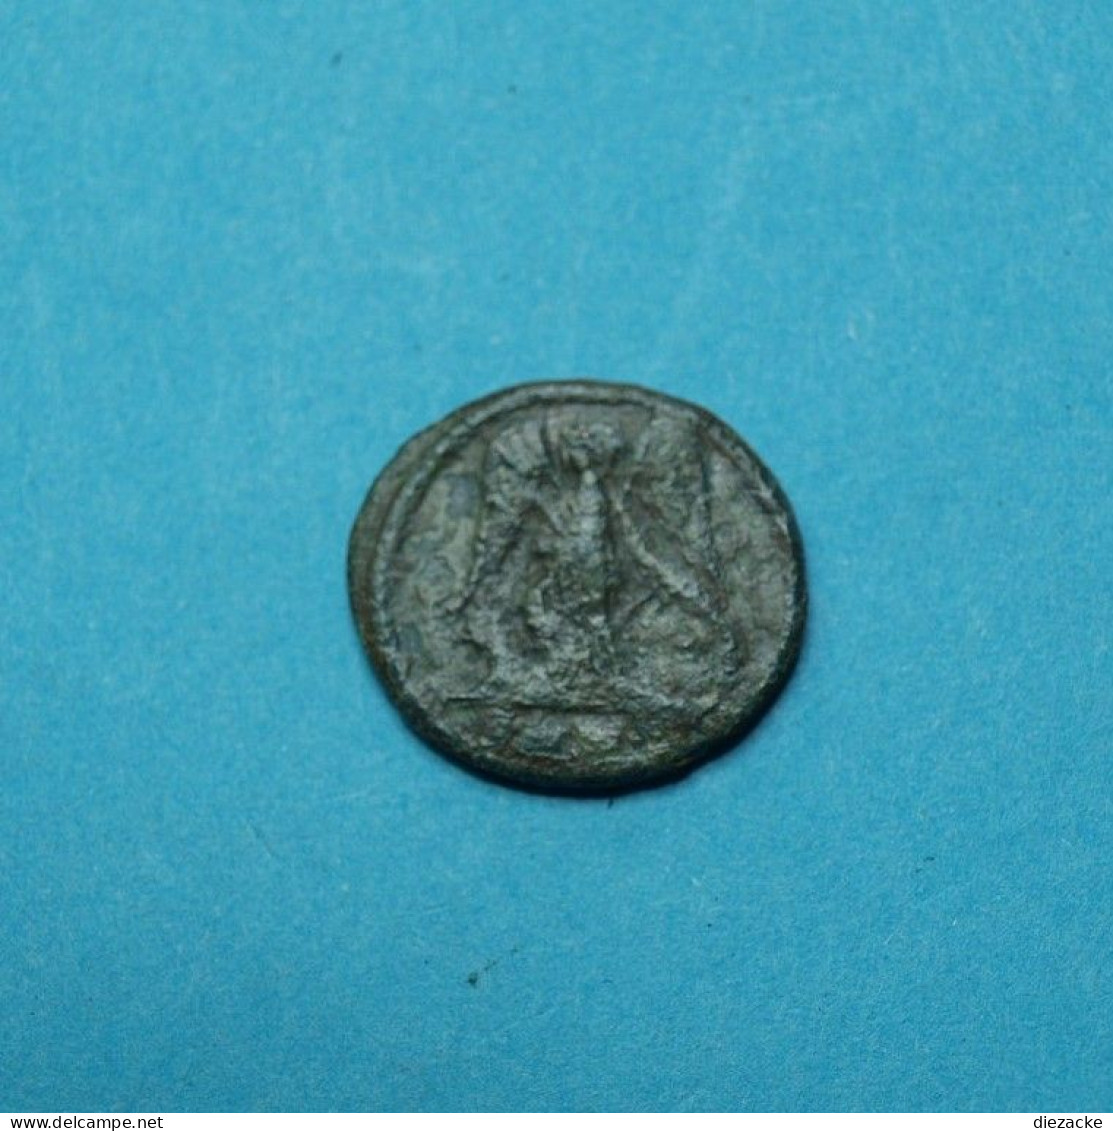 Römische Kaiserzeit 330 Konstantin Der Große 3 Follis (M4430 - Der Soldatenkaiser (die Militärkrise) (235 / 284)